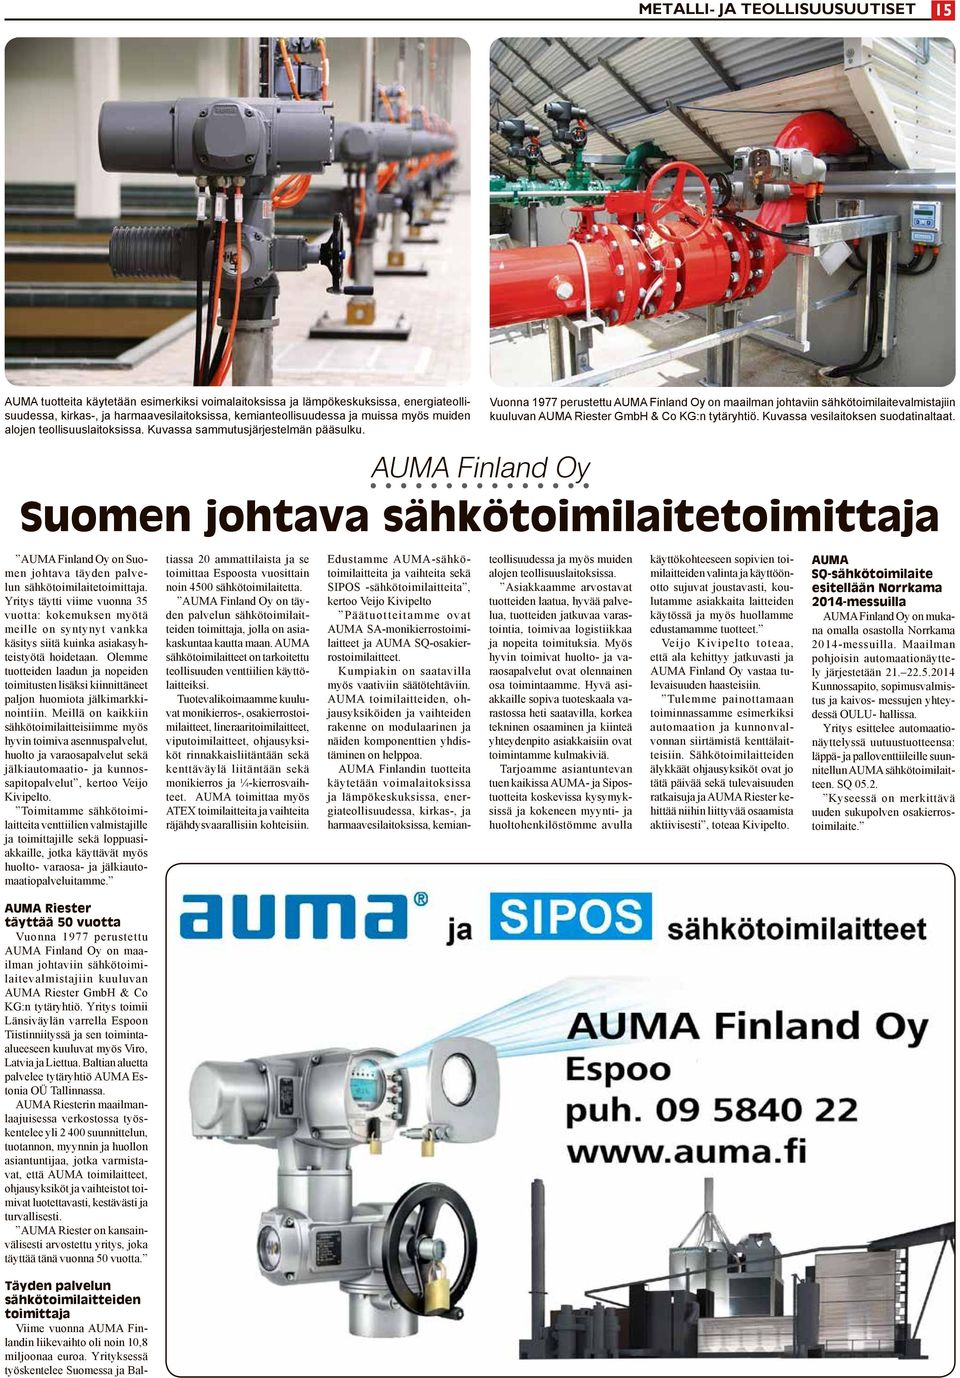 Vuonna 1977 perustettu AUMA Finland Oy on maailman johtaviin sähkötoimilaitevalmistajiin kuuluvan AUMA Riester GmbH & Co KG:n tytäryhtiö. Kuvassa vesilaitoksen suodatinaltaat.